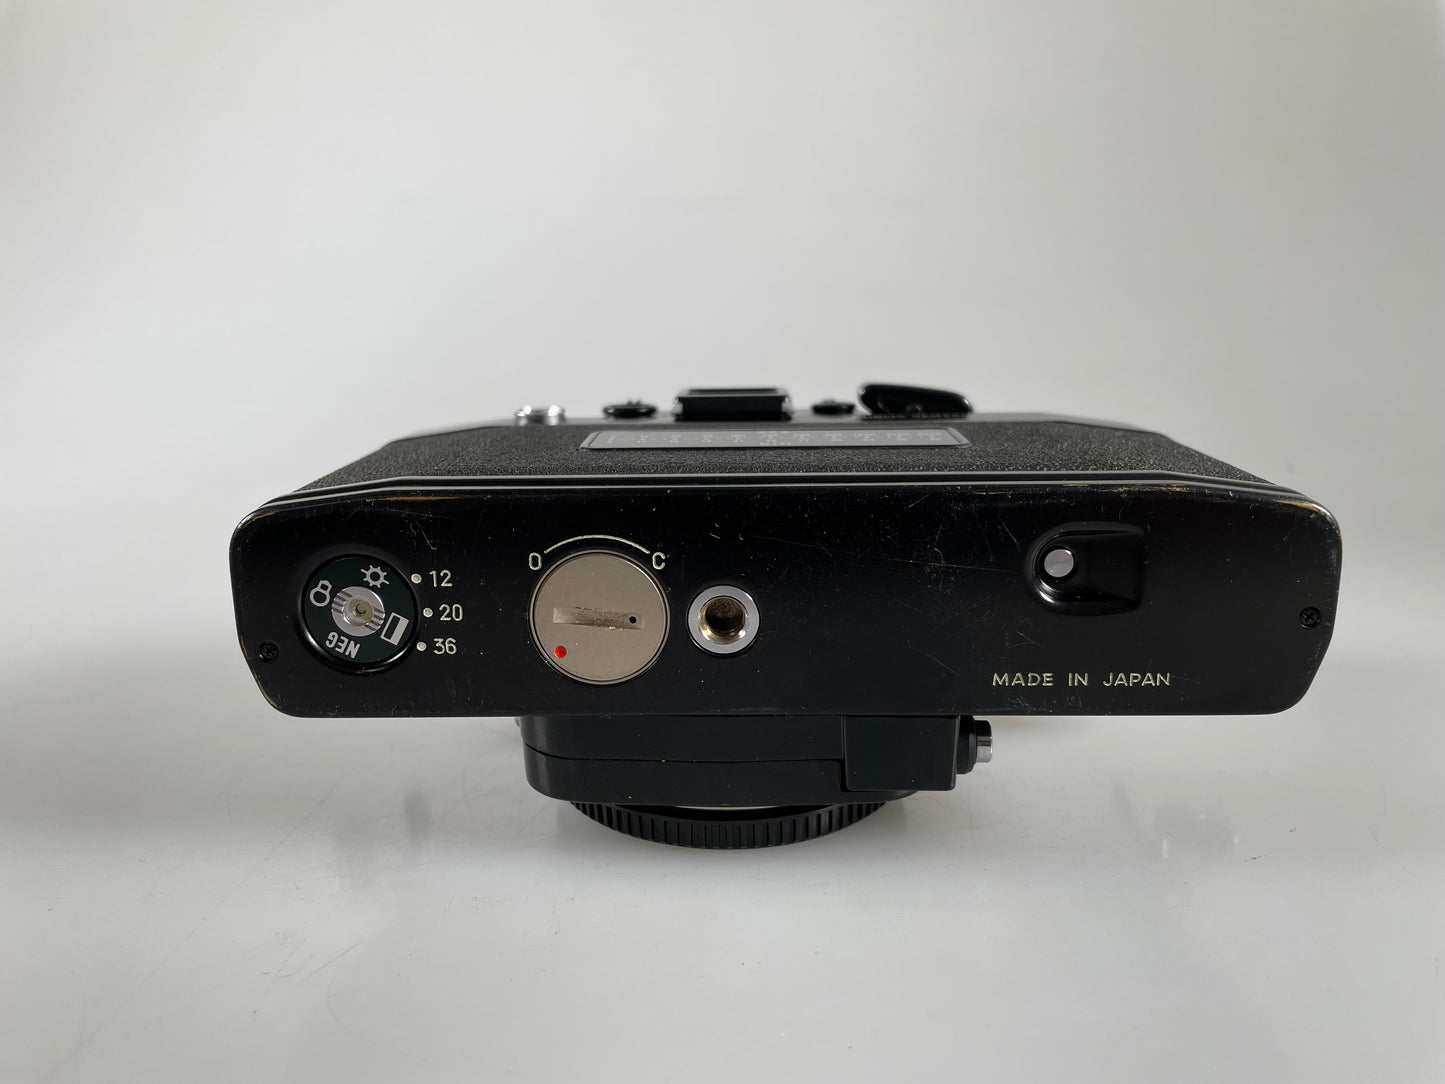 Minolta XK 35mm film Camera body Black w/ RARE AE-S meter finder